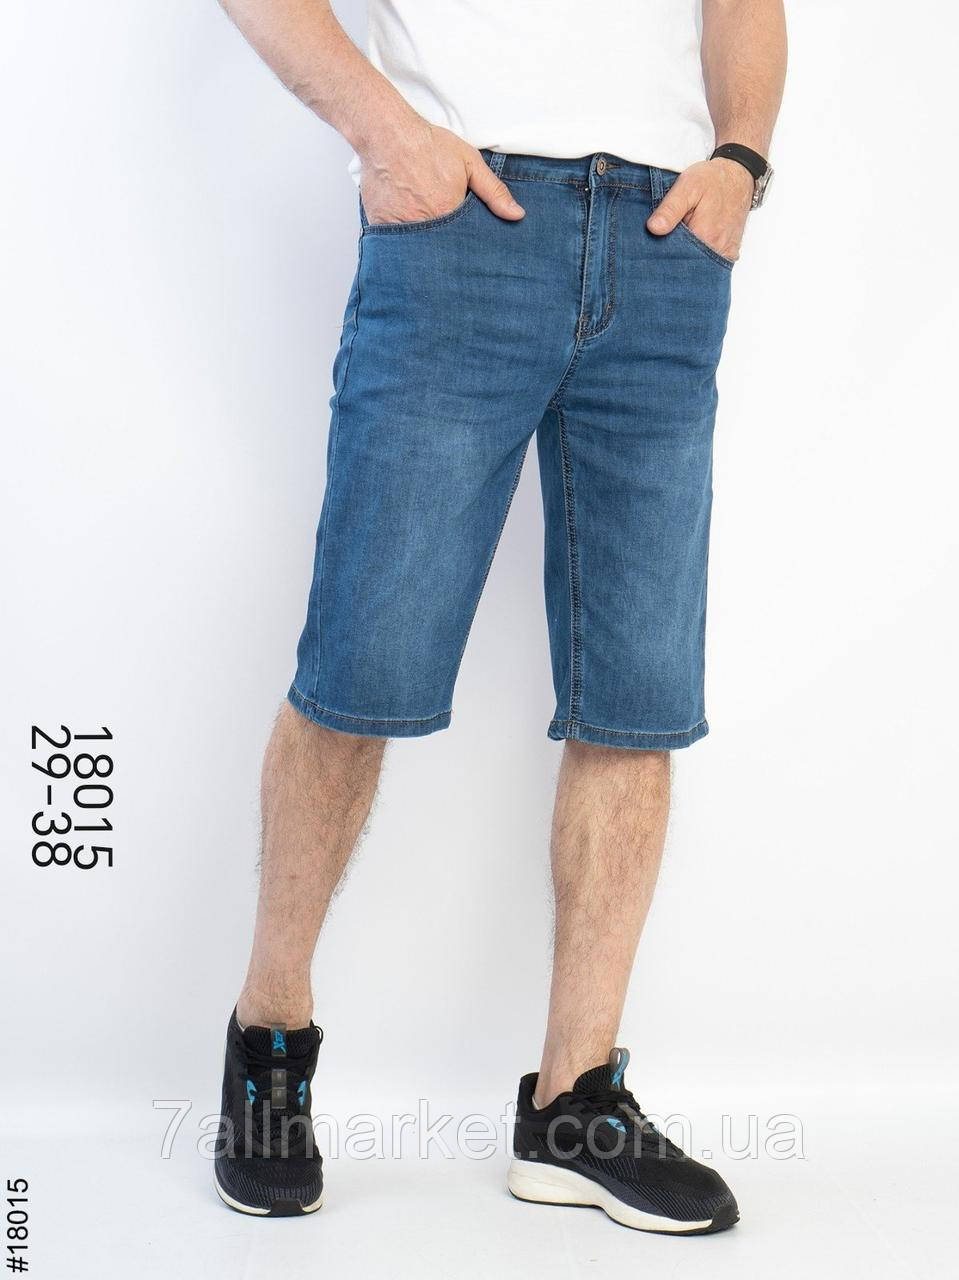 Шорти чоловічі джинсові розміри 29-38 "ROOS" купити недорого від прямого постачальника